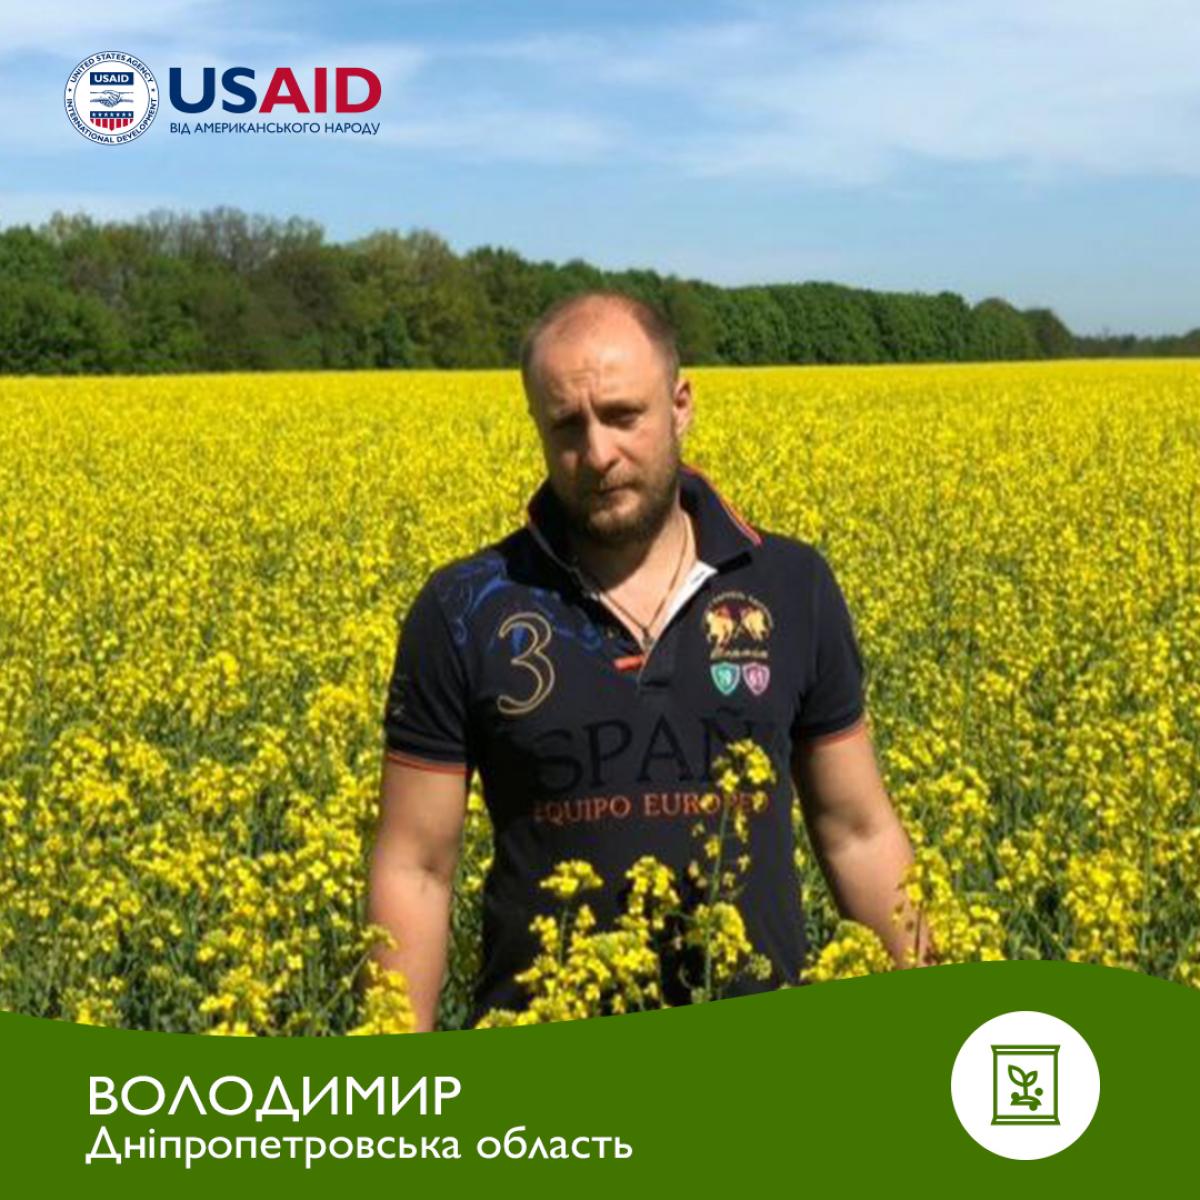 Volodymyr, a farmer from Dnipropetrovsk Oblast_Ukr